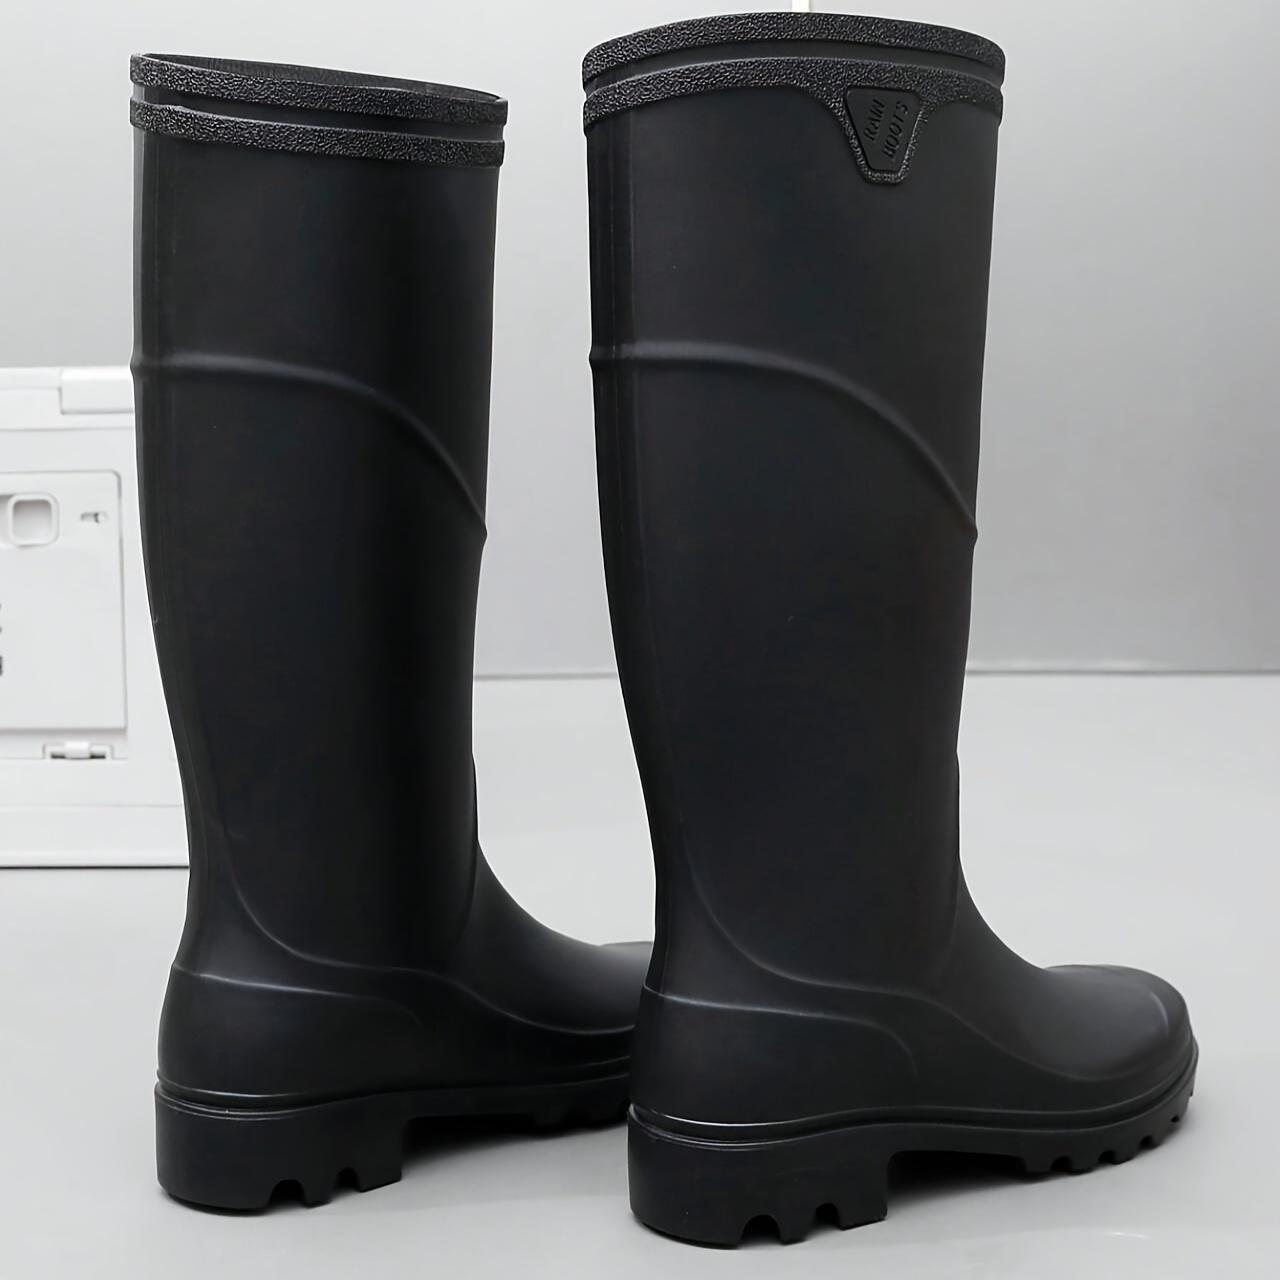 high top rain boots men s wear resistant waterproof non slip